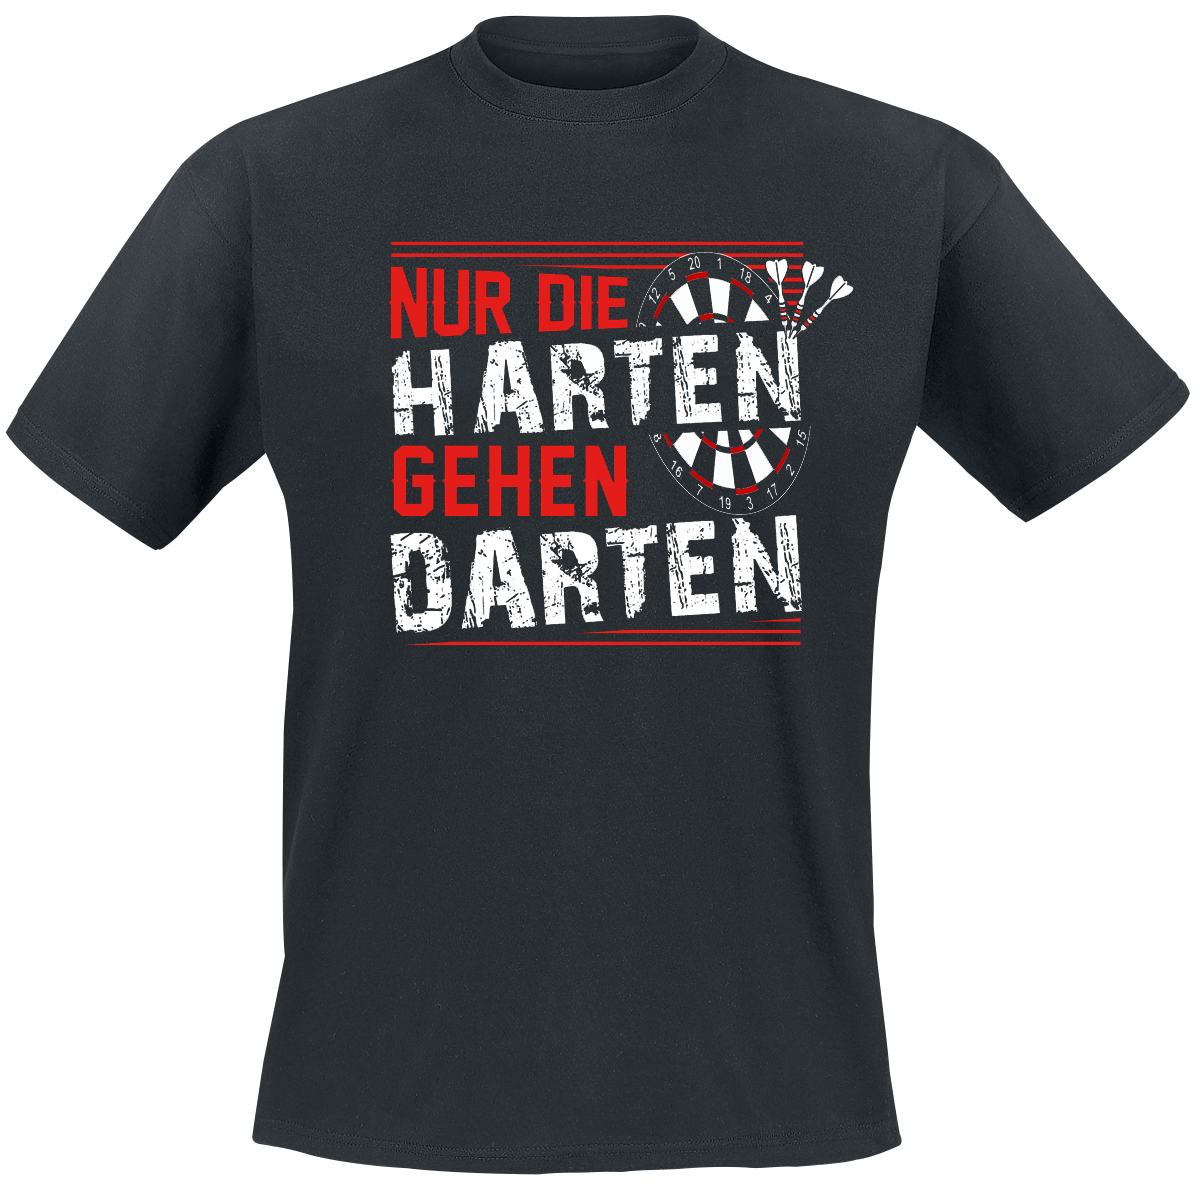 Darts - Nur die Harten gehen darten - T-Shirt - schwarz - EMP Exklusiv!